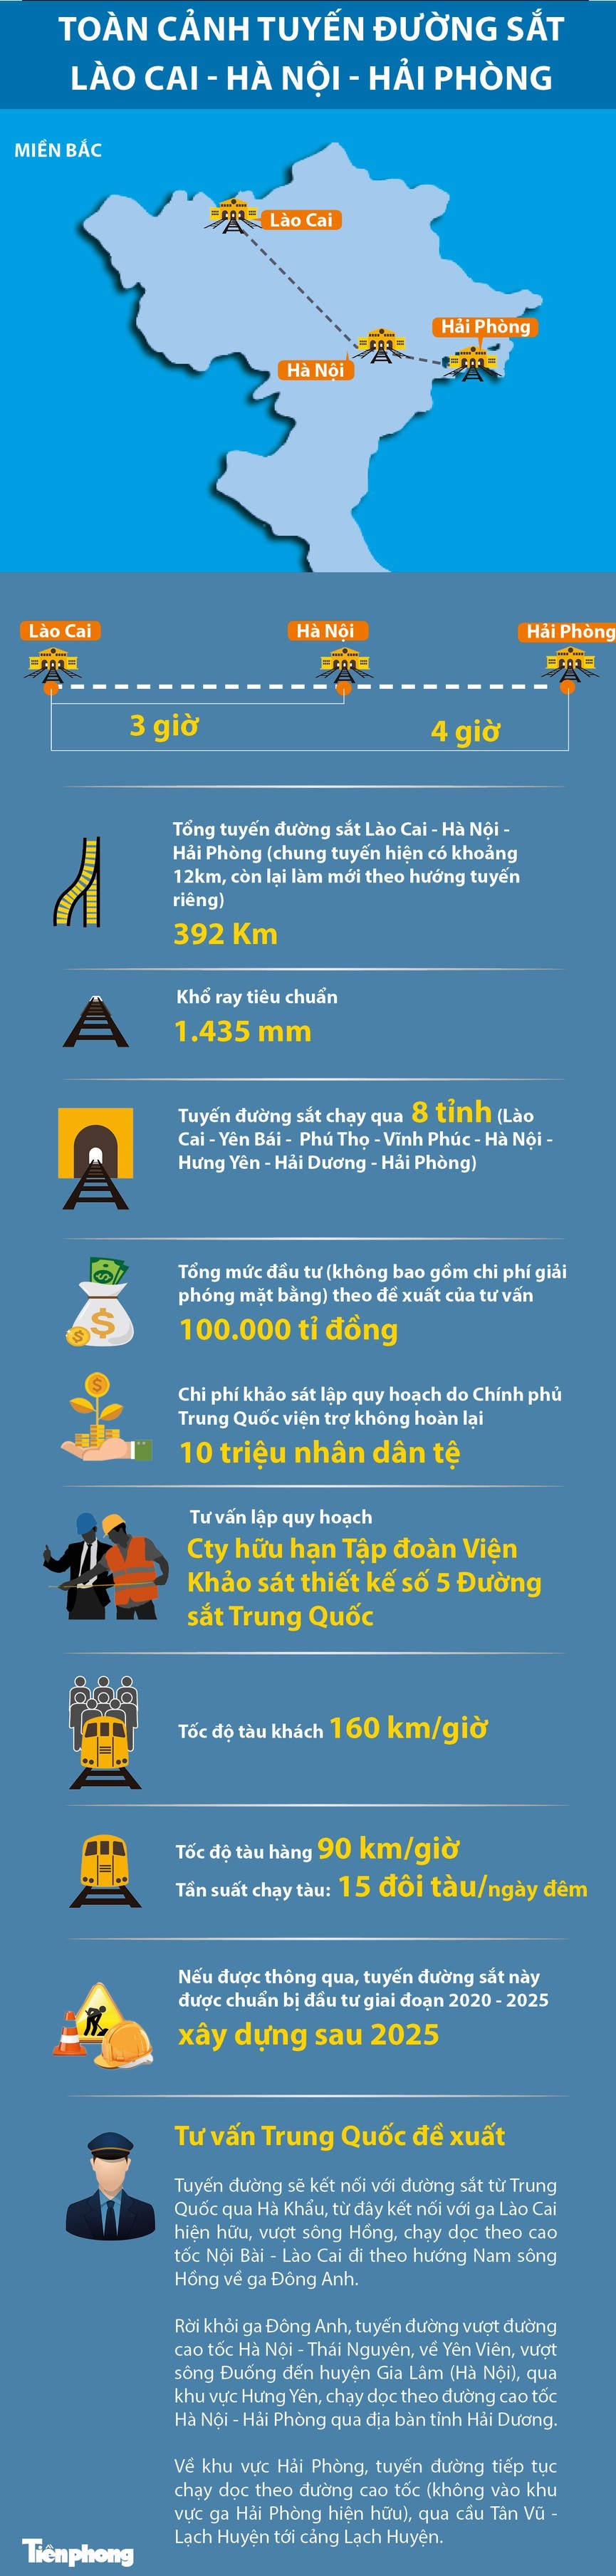 Quy hoạch đường sắt Lào Cai - Hà Nội - Hải Phòng xây dựng sau năm 2025?